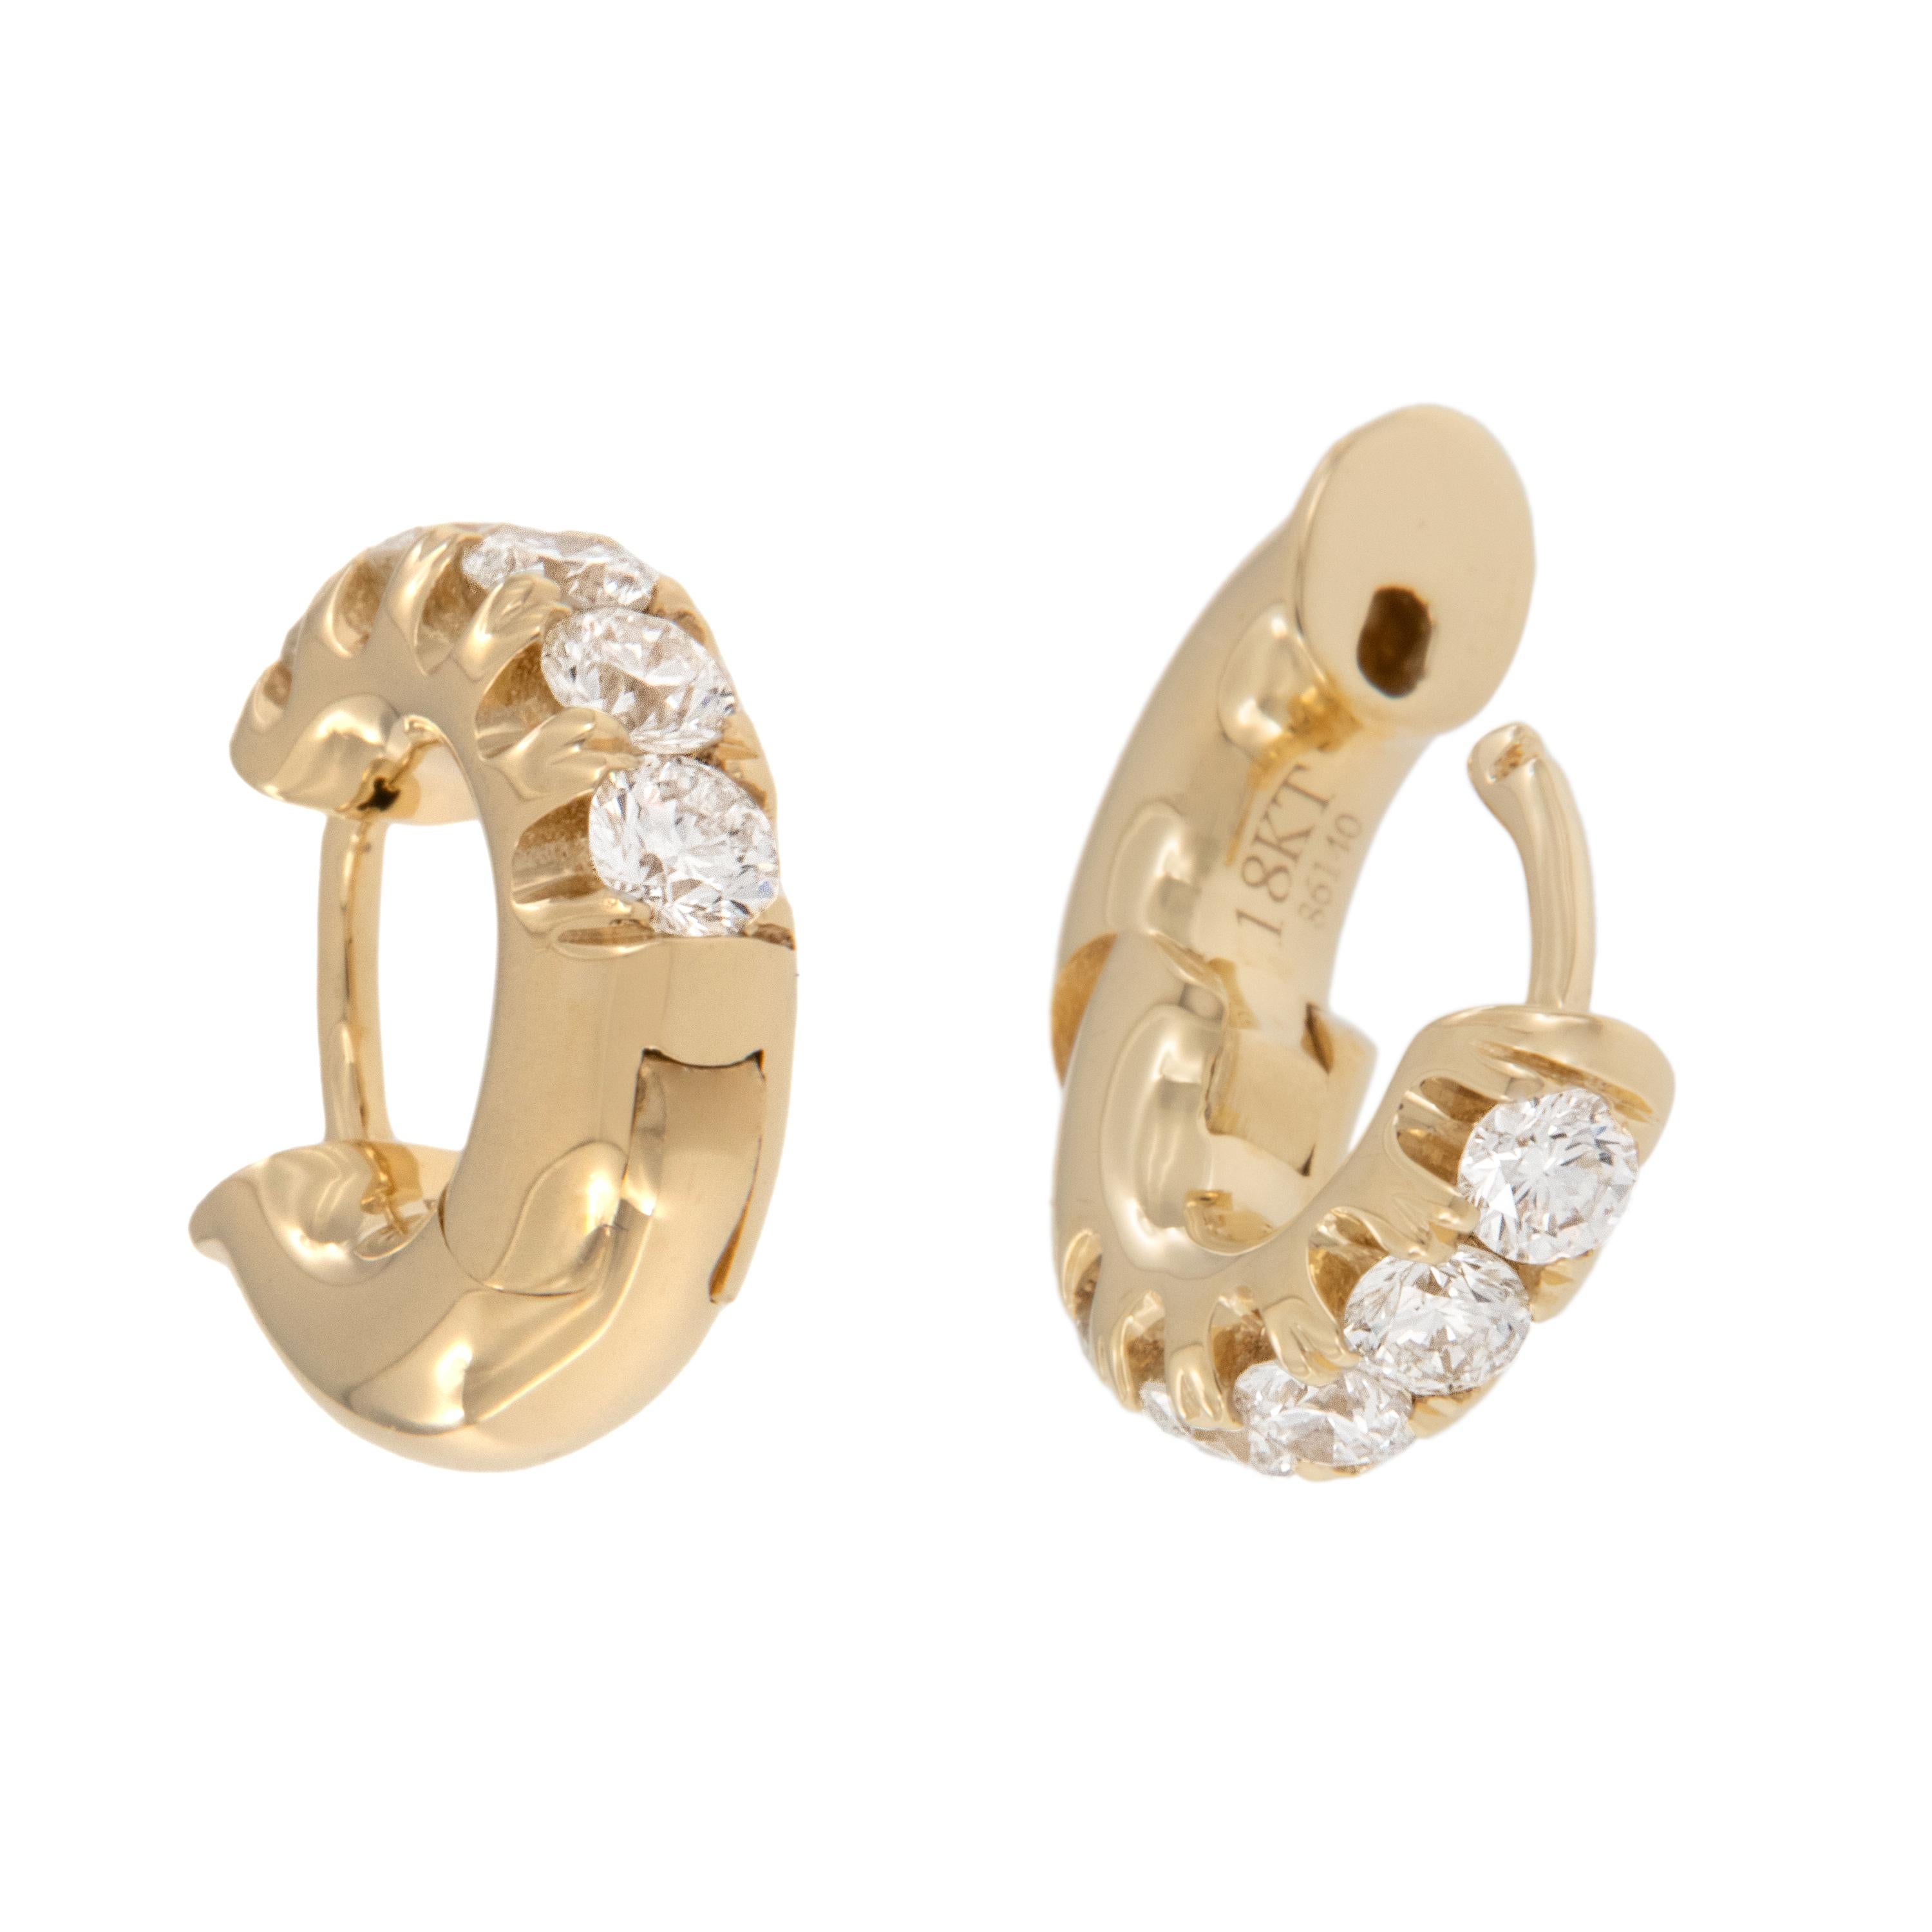 Magnifiques boucles d'oreilles en diamant à deux branches que vous pouvez porter tous les jours ! Fabriquées en or jaune fin 18 carats, ces boucles d'oreilles étreintes sont ornées de 0,50 Cttw. de diamants de pureté VS et de couleur G-H. Les